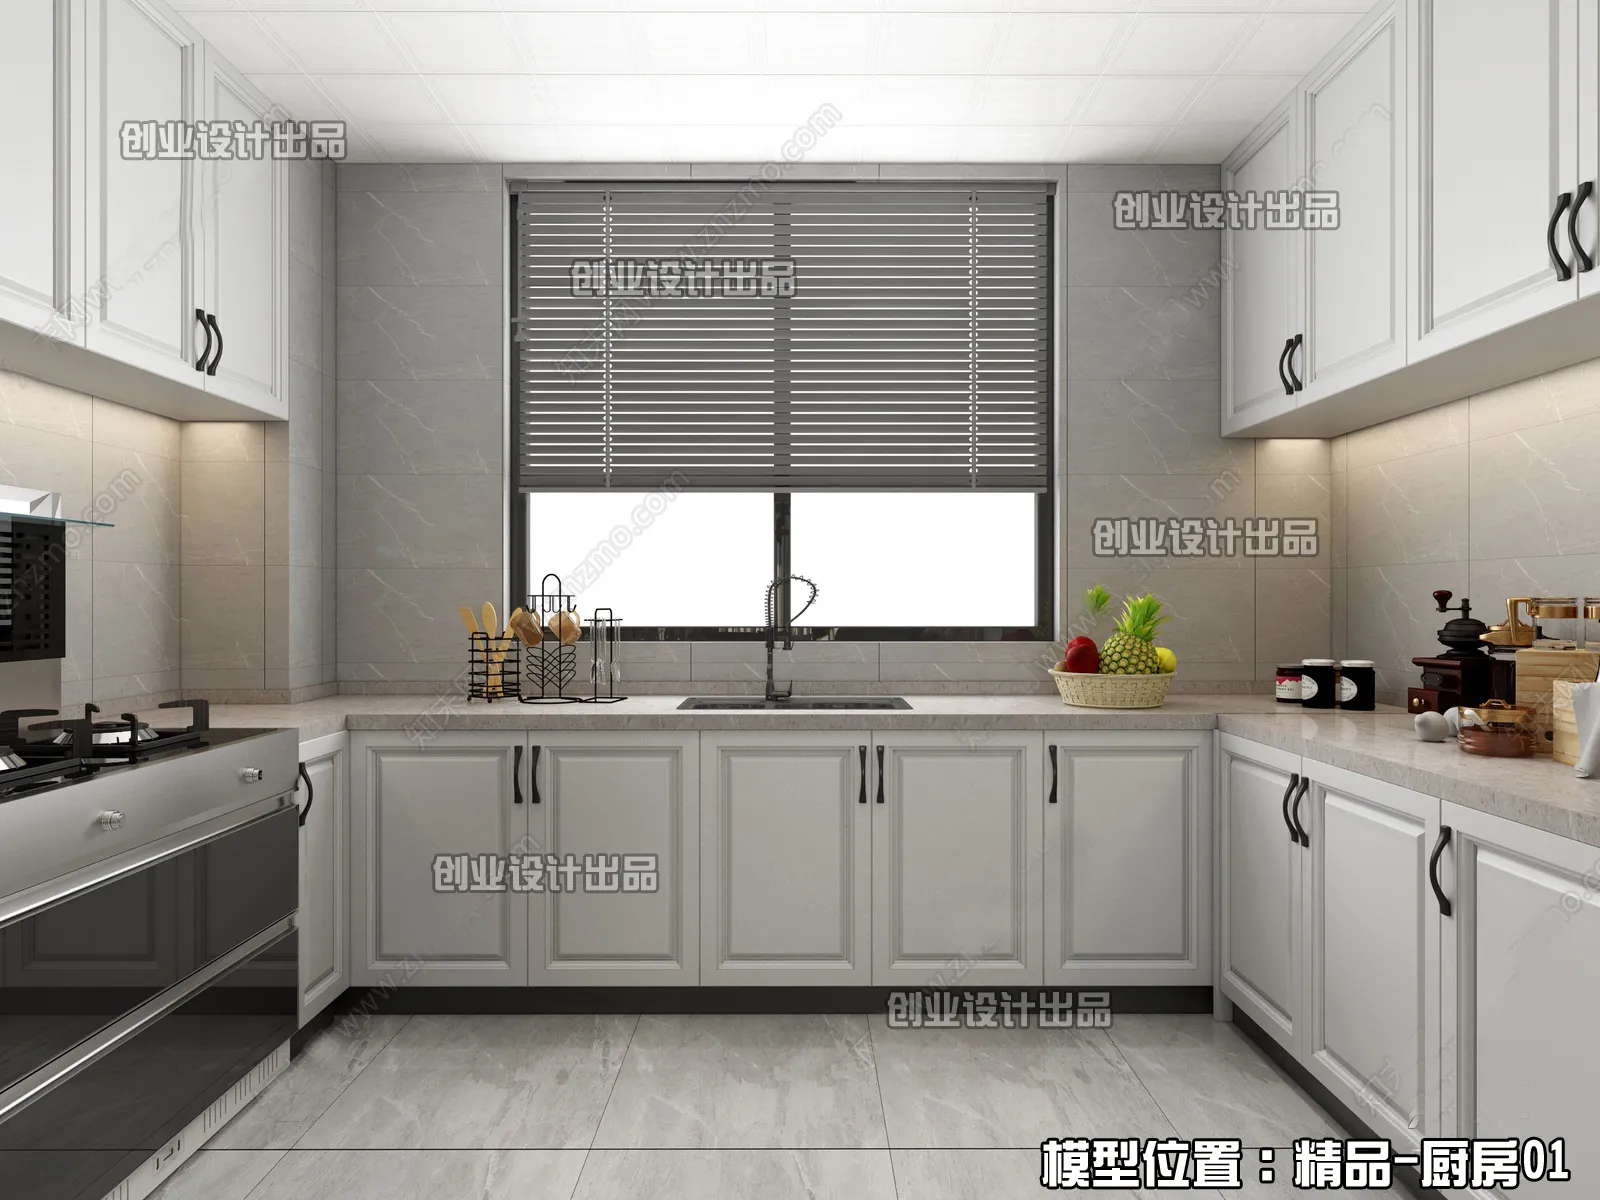 Kitchen – Modern Interior Design – 3D Models – 045